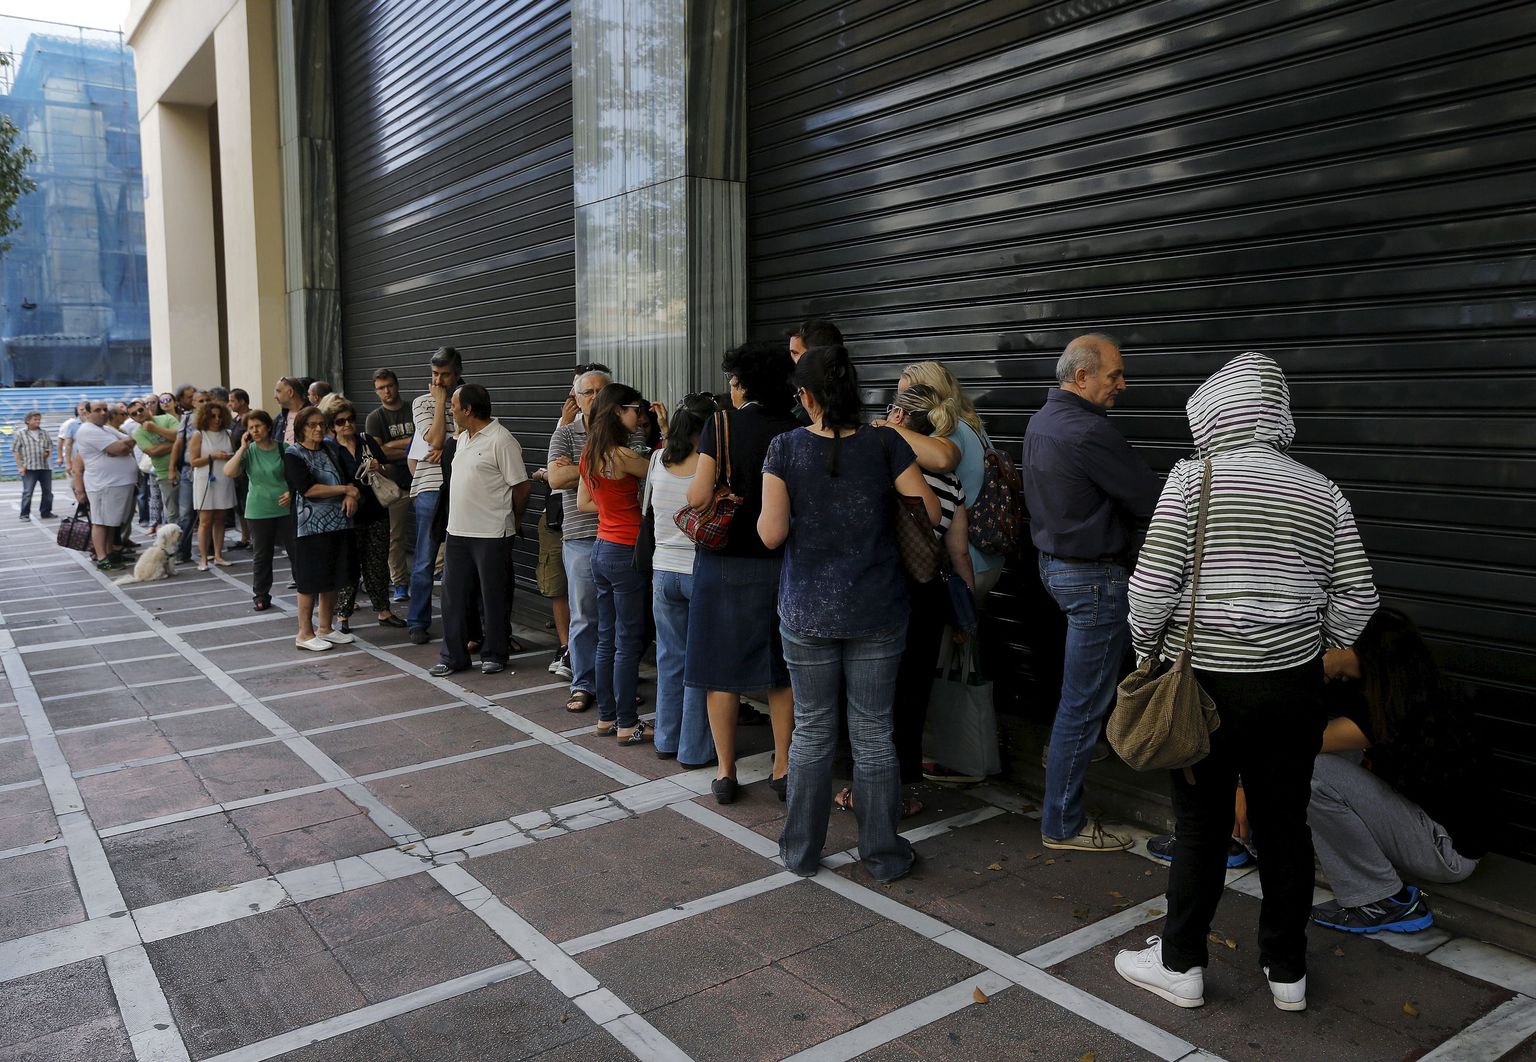 Kreeka. Järjekorrad pangaautomaatide taga